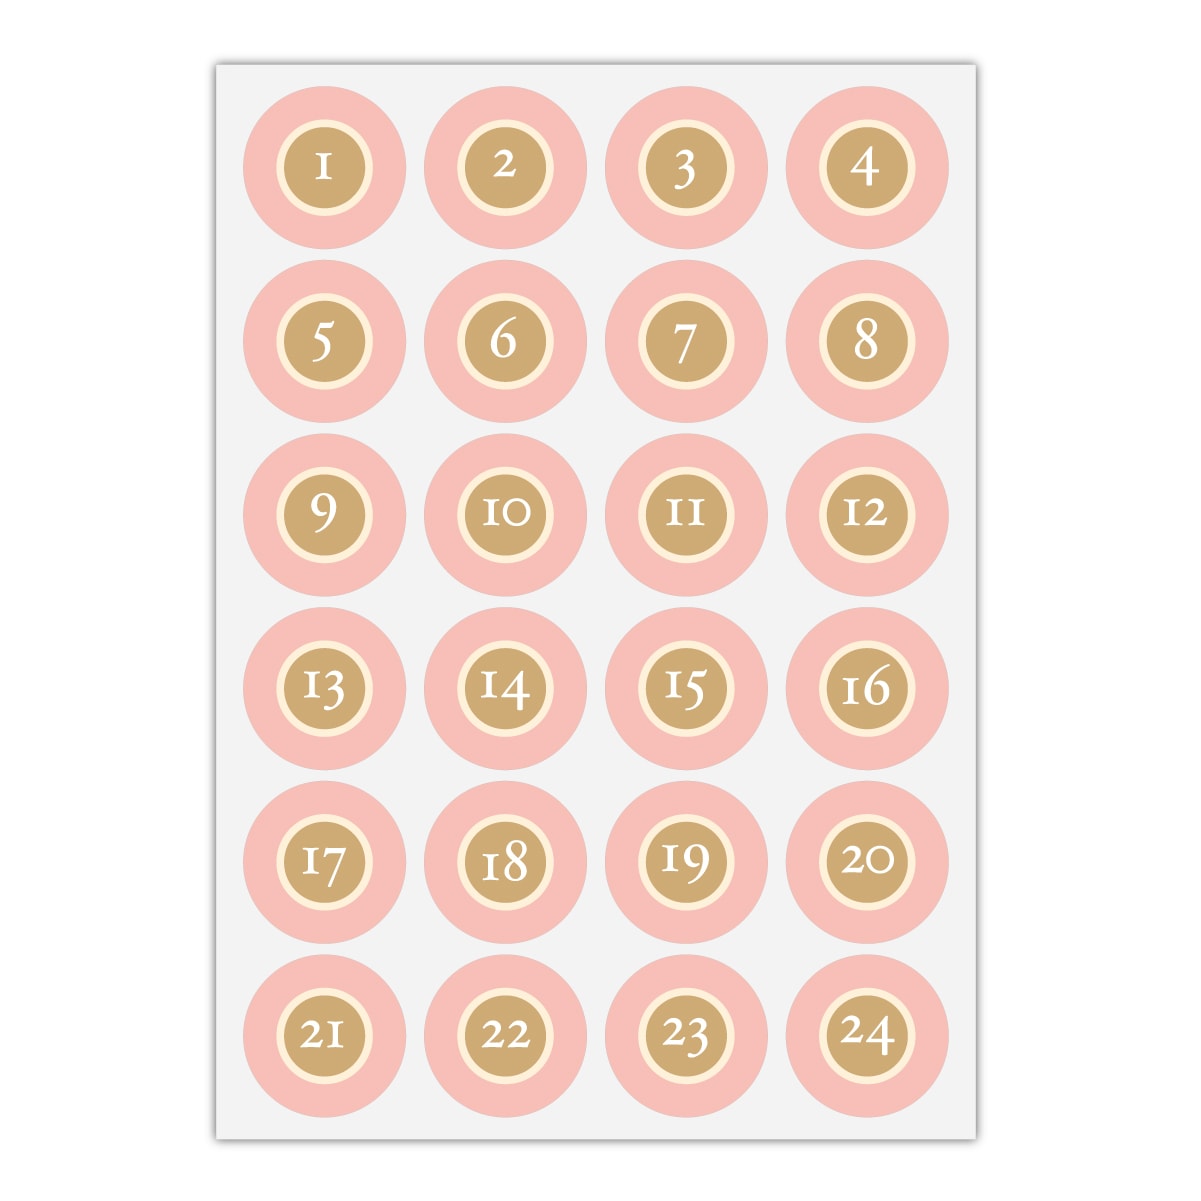 Kartenkaufrausch Sticker in rosa: 24 klassisch, reduzierte Advents Aufkleber